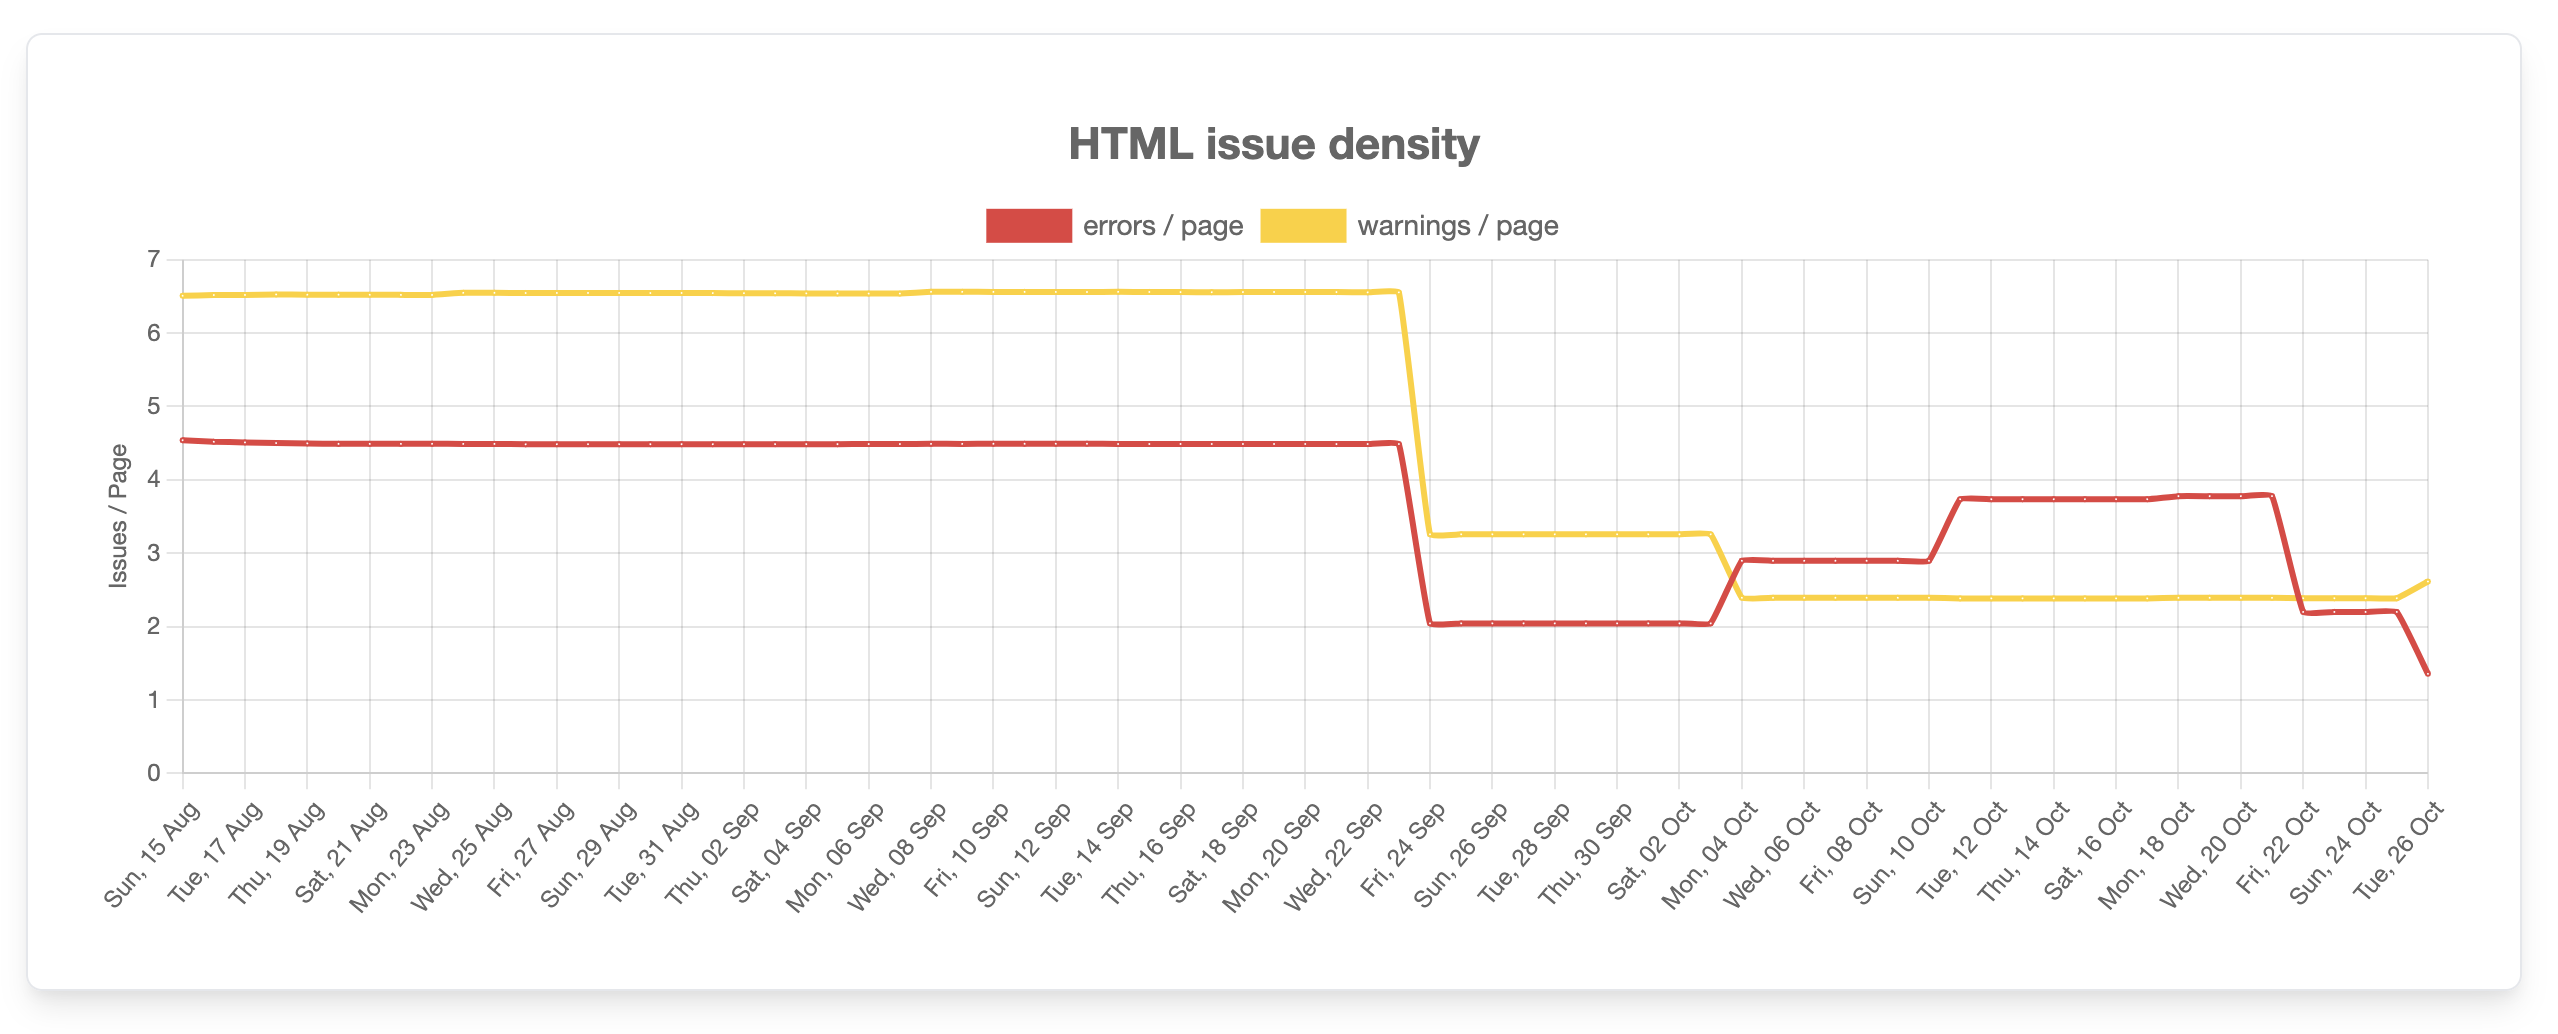 HTML issue density evolution